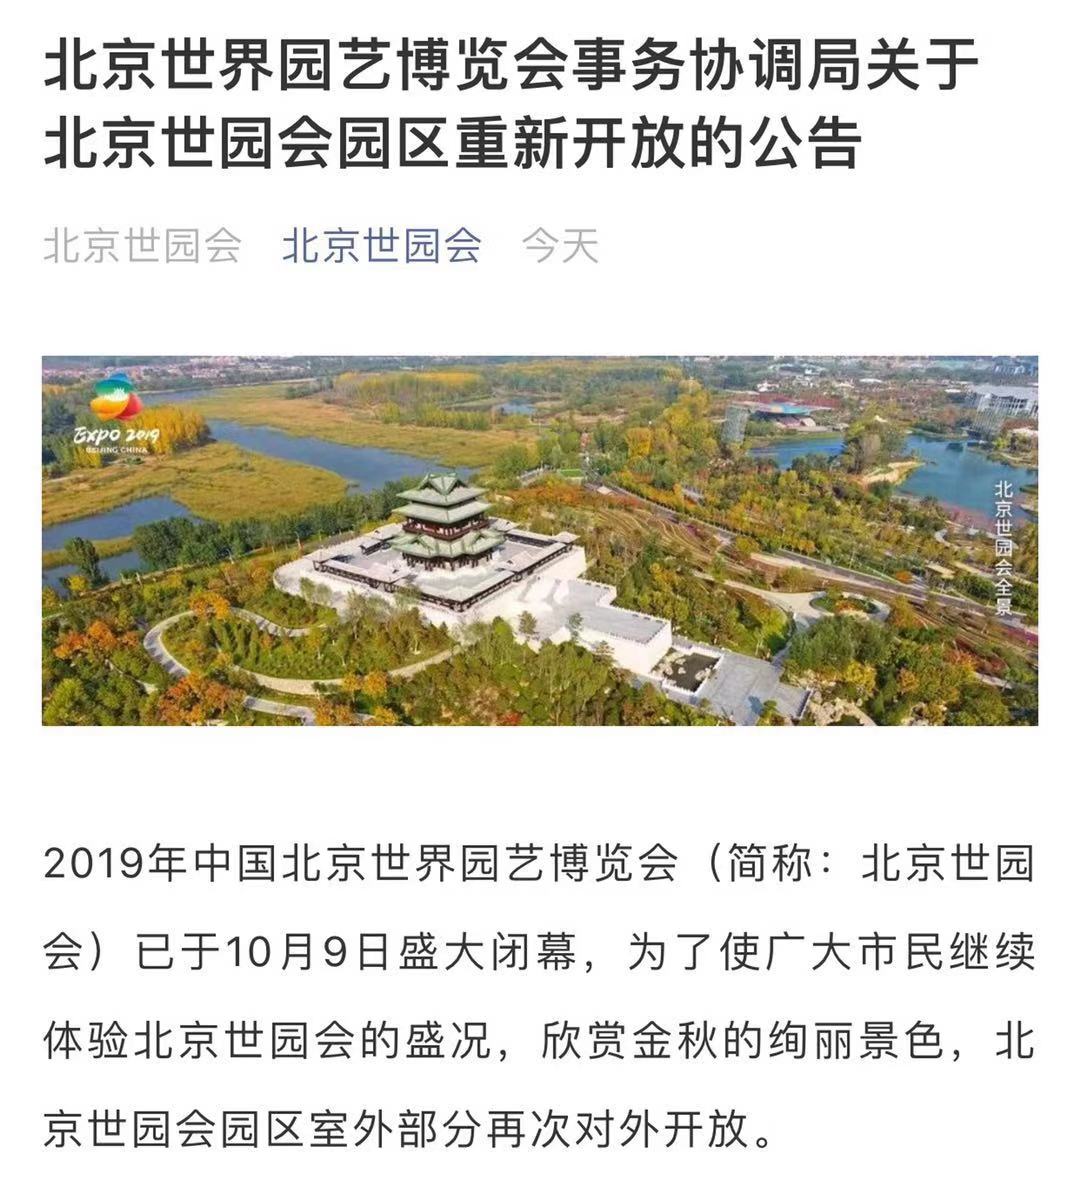 北京世园会票价20元 园区室外部分再次对外开放